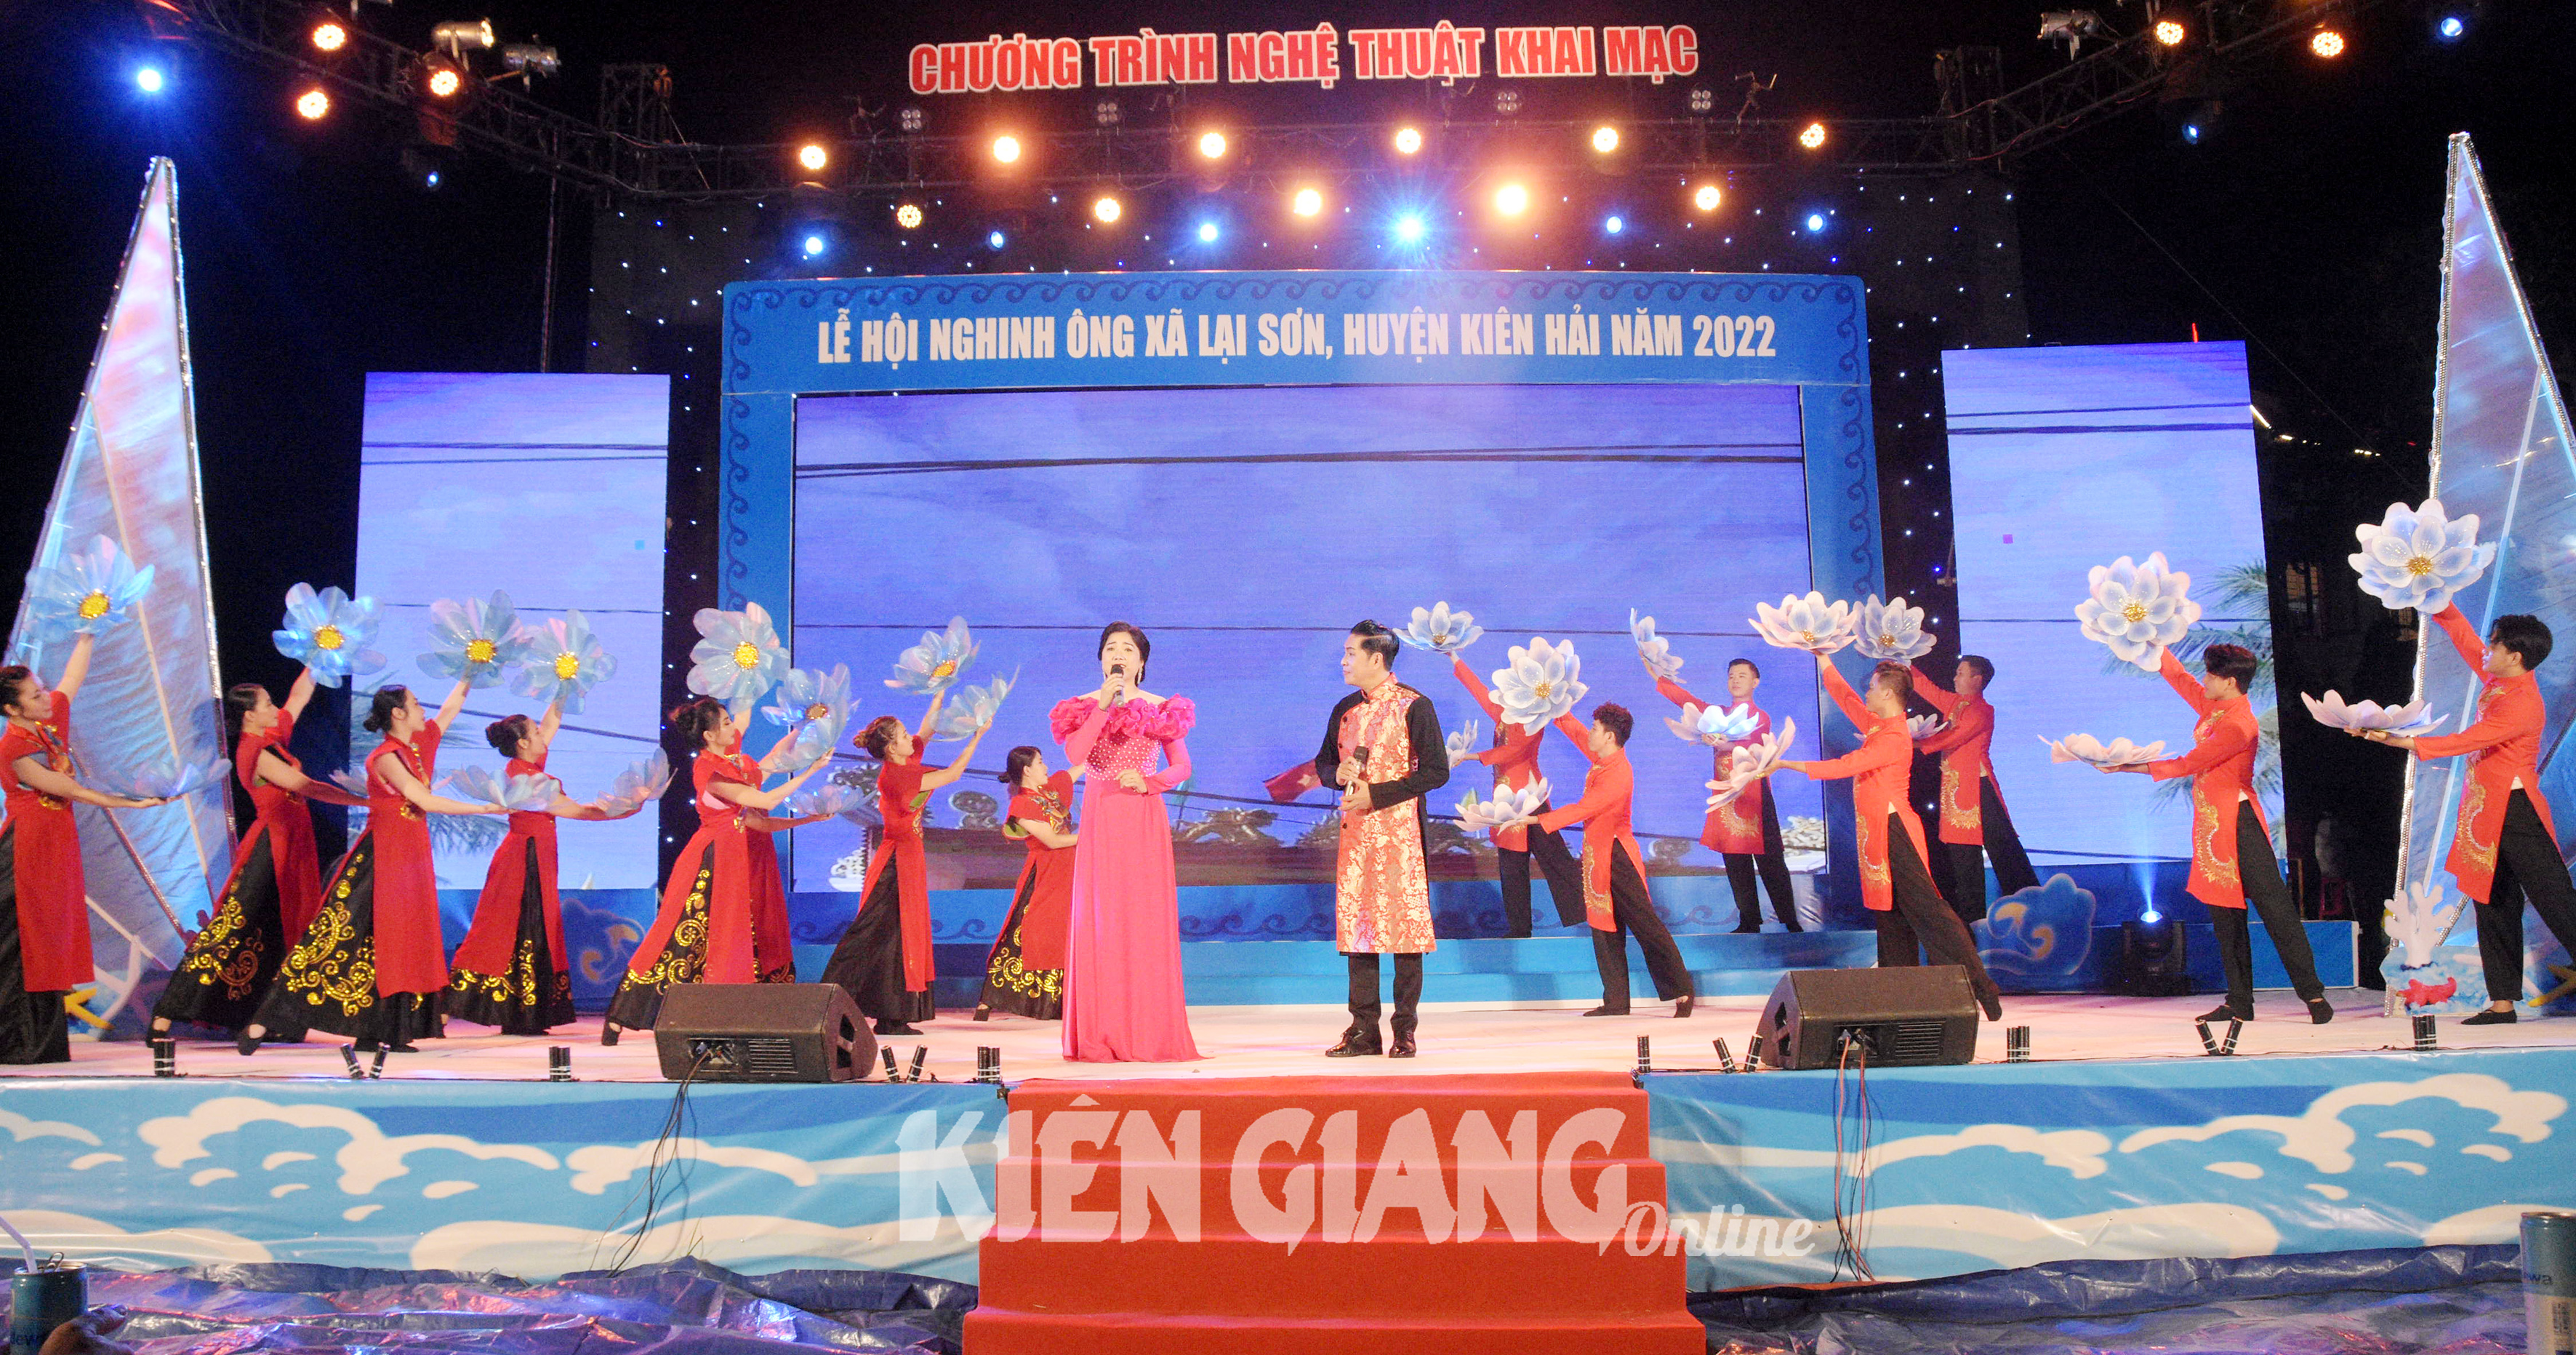 Lễ hội Nghinh Ông góp phần quảng bá du lịch cho Kiên Hải 